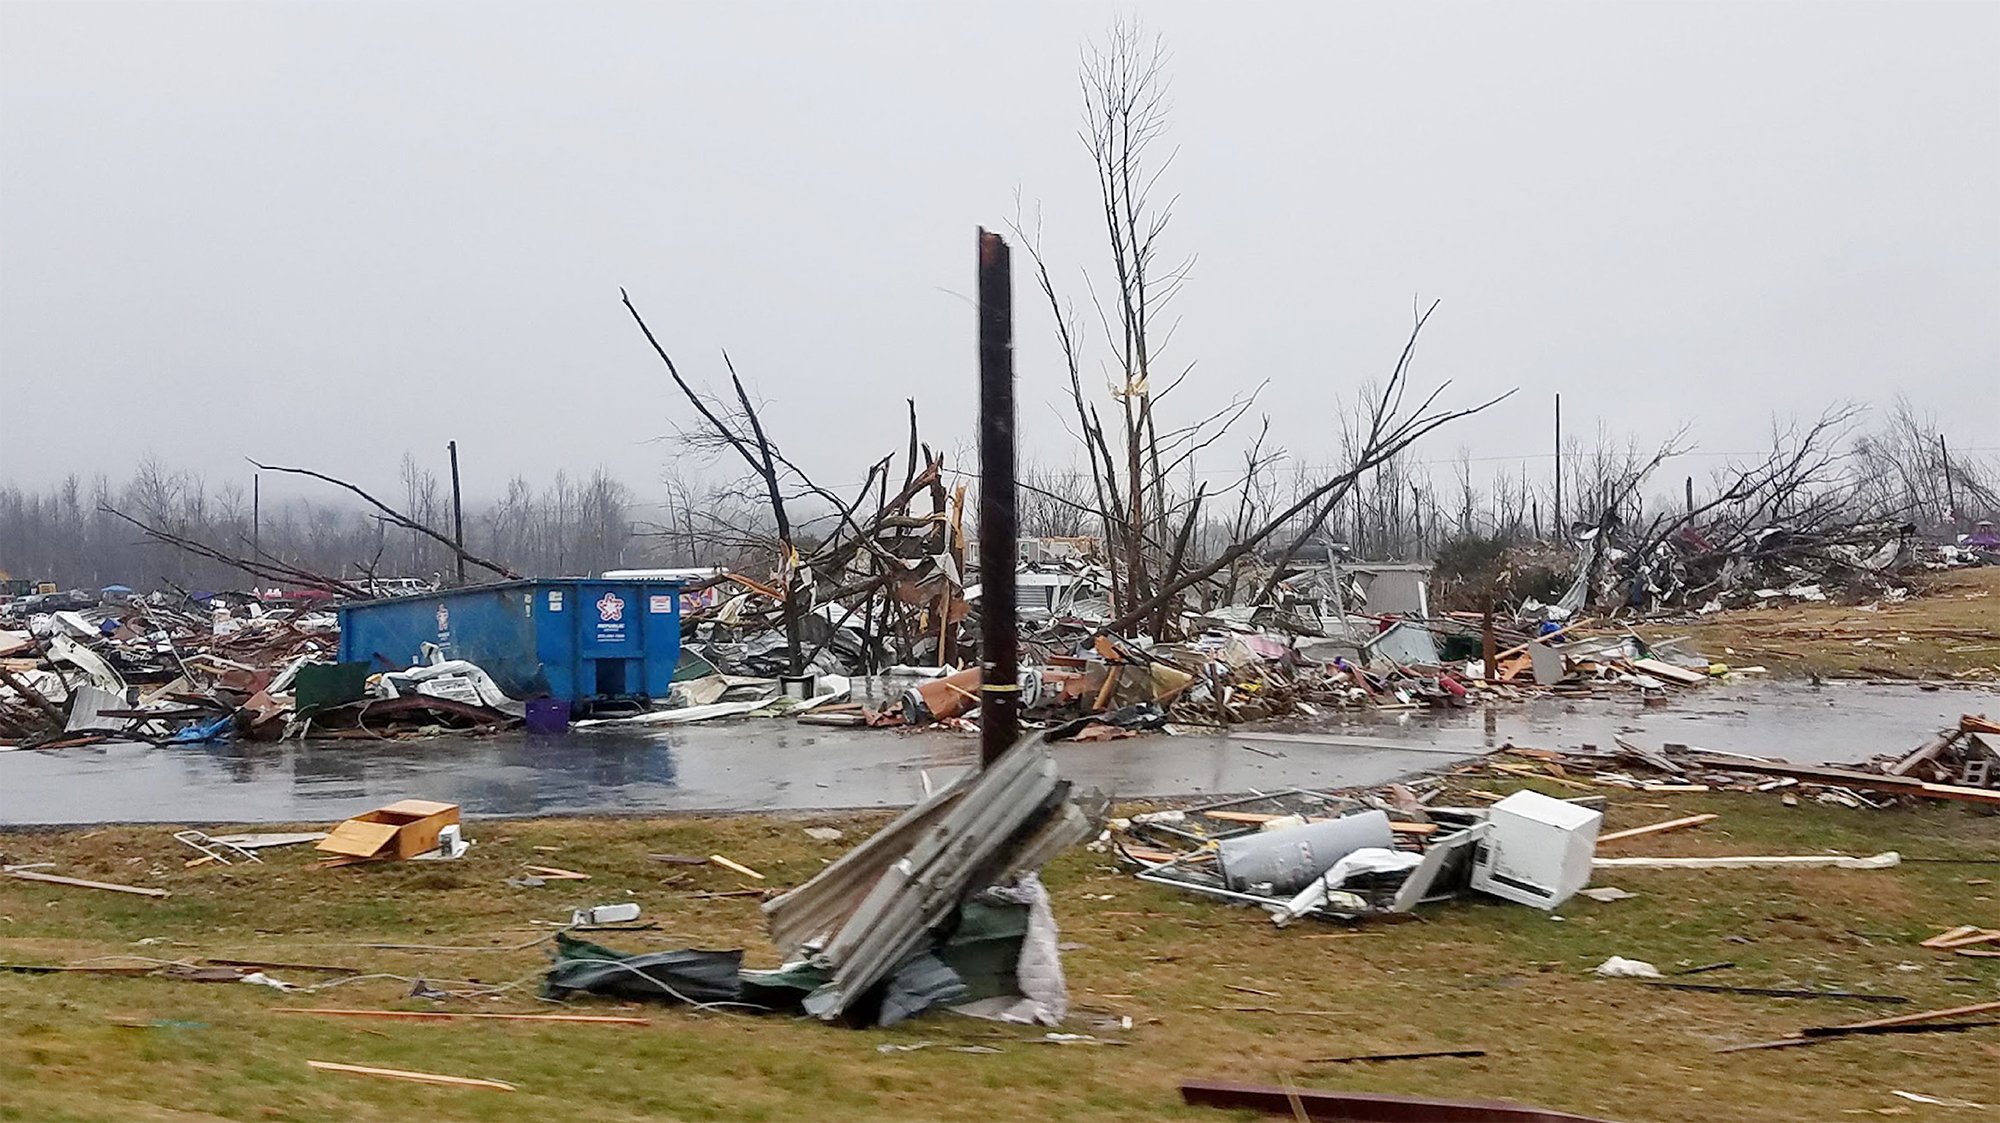 Western Kentucky Tornado Field